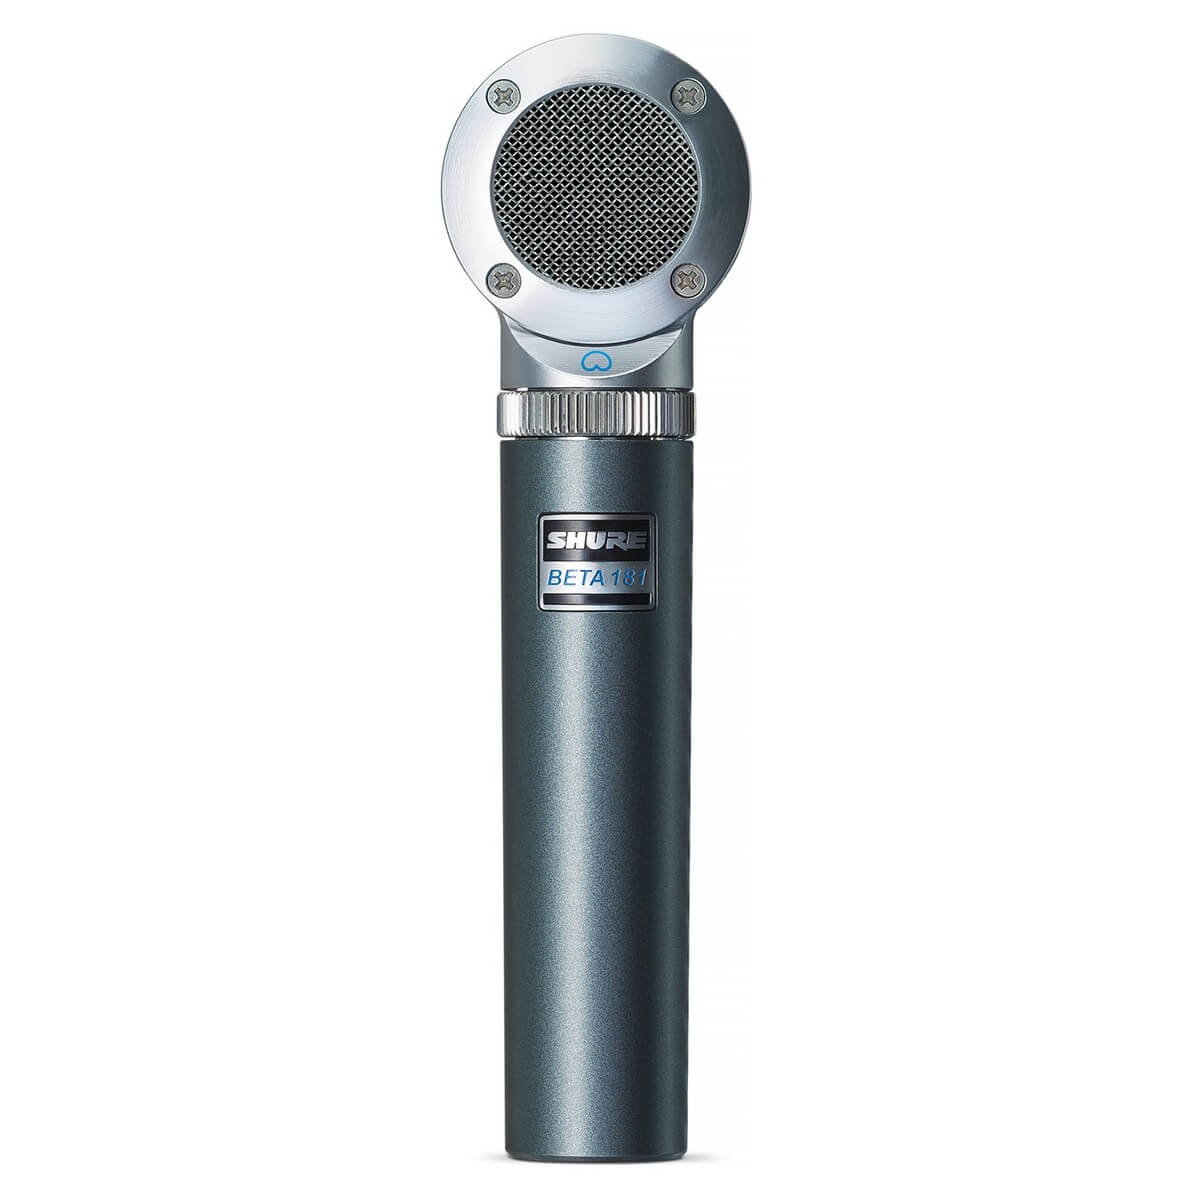 Shure general Shure beta181/o micrófono omnidireccional ultracompacto de captación lateral